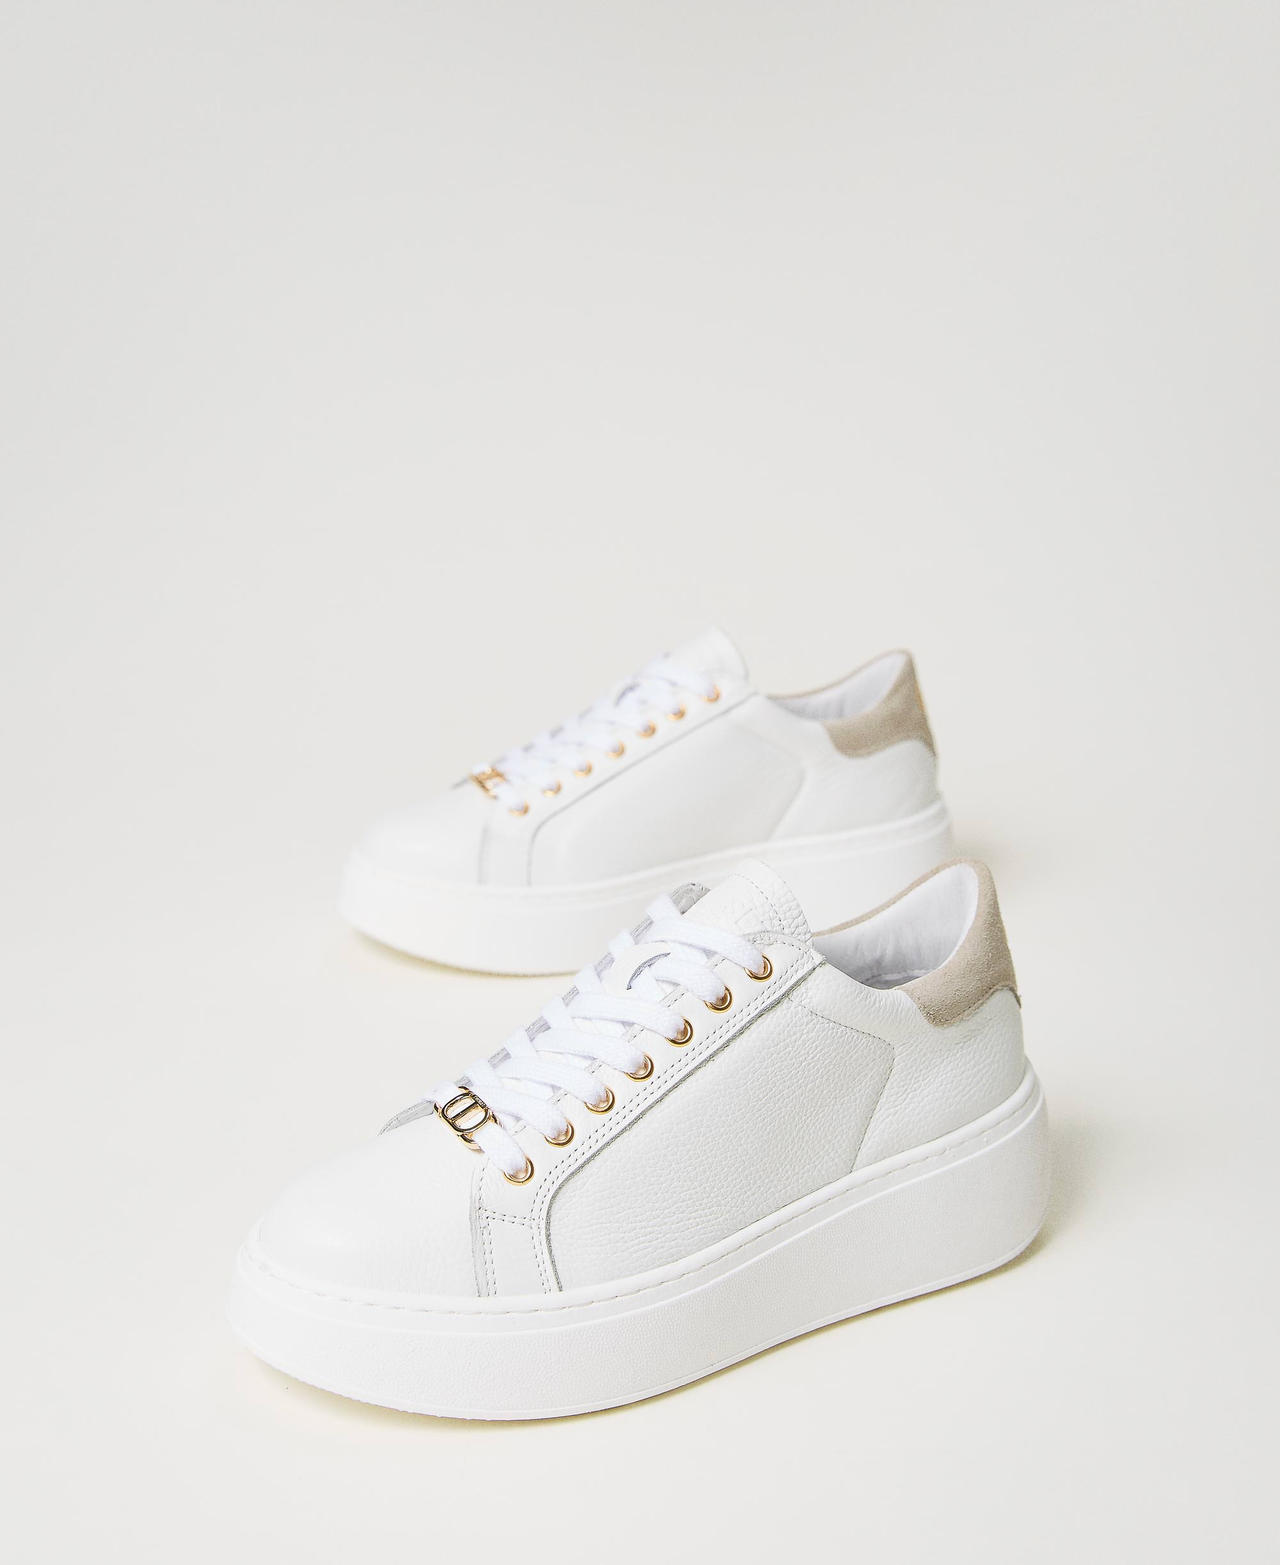 Sneakers in pelle con dettaglio a contrasto Bicolor Bianco Ottico / Beige "Parchment" Donna 241TCT094-02